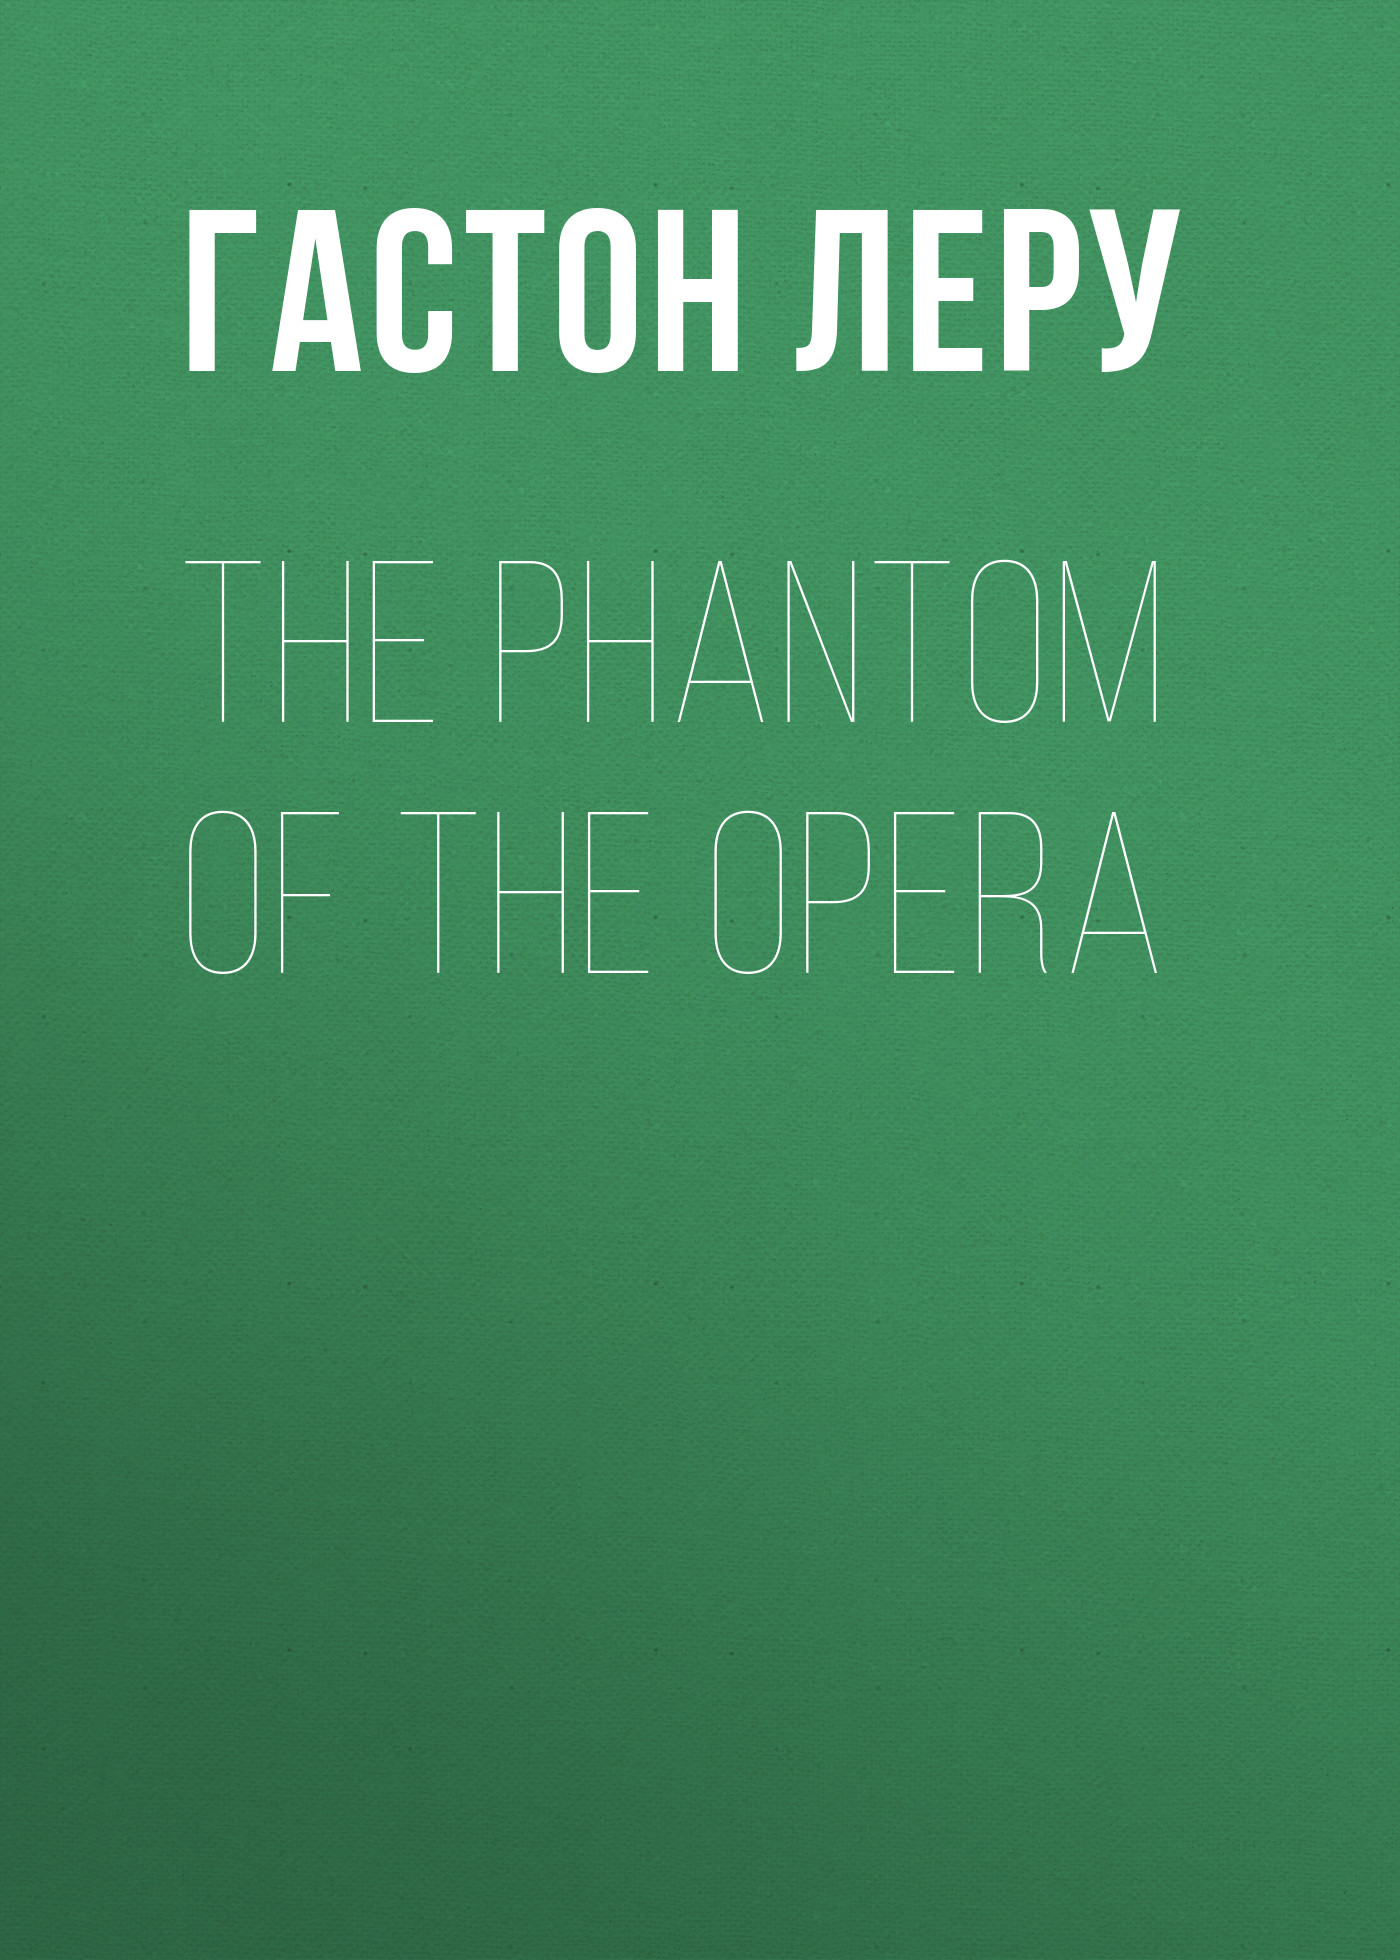 Книга The Phantom of the Opera из серии , созданная Гастон Леру, может относится к жанру Зарубежная классика, Литература 20 века, Ужасы и Мистика, Зарубежная старинная литература. Стоимость электронной книги The Phantom of the Opera с идентификатором 34840598 составляет 0 руб.